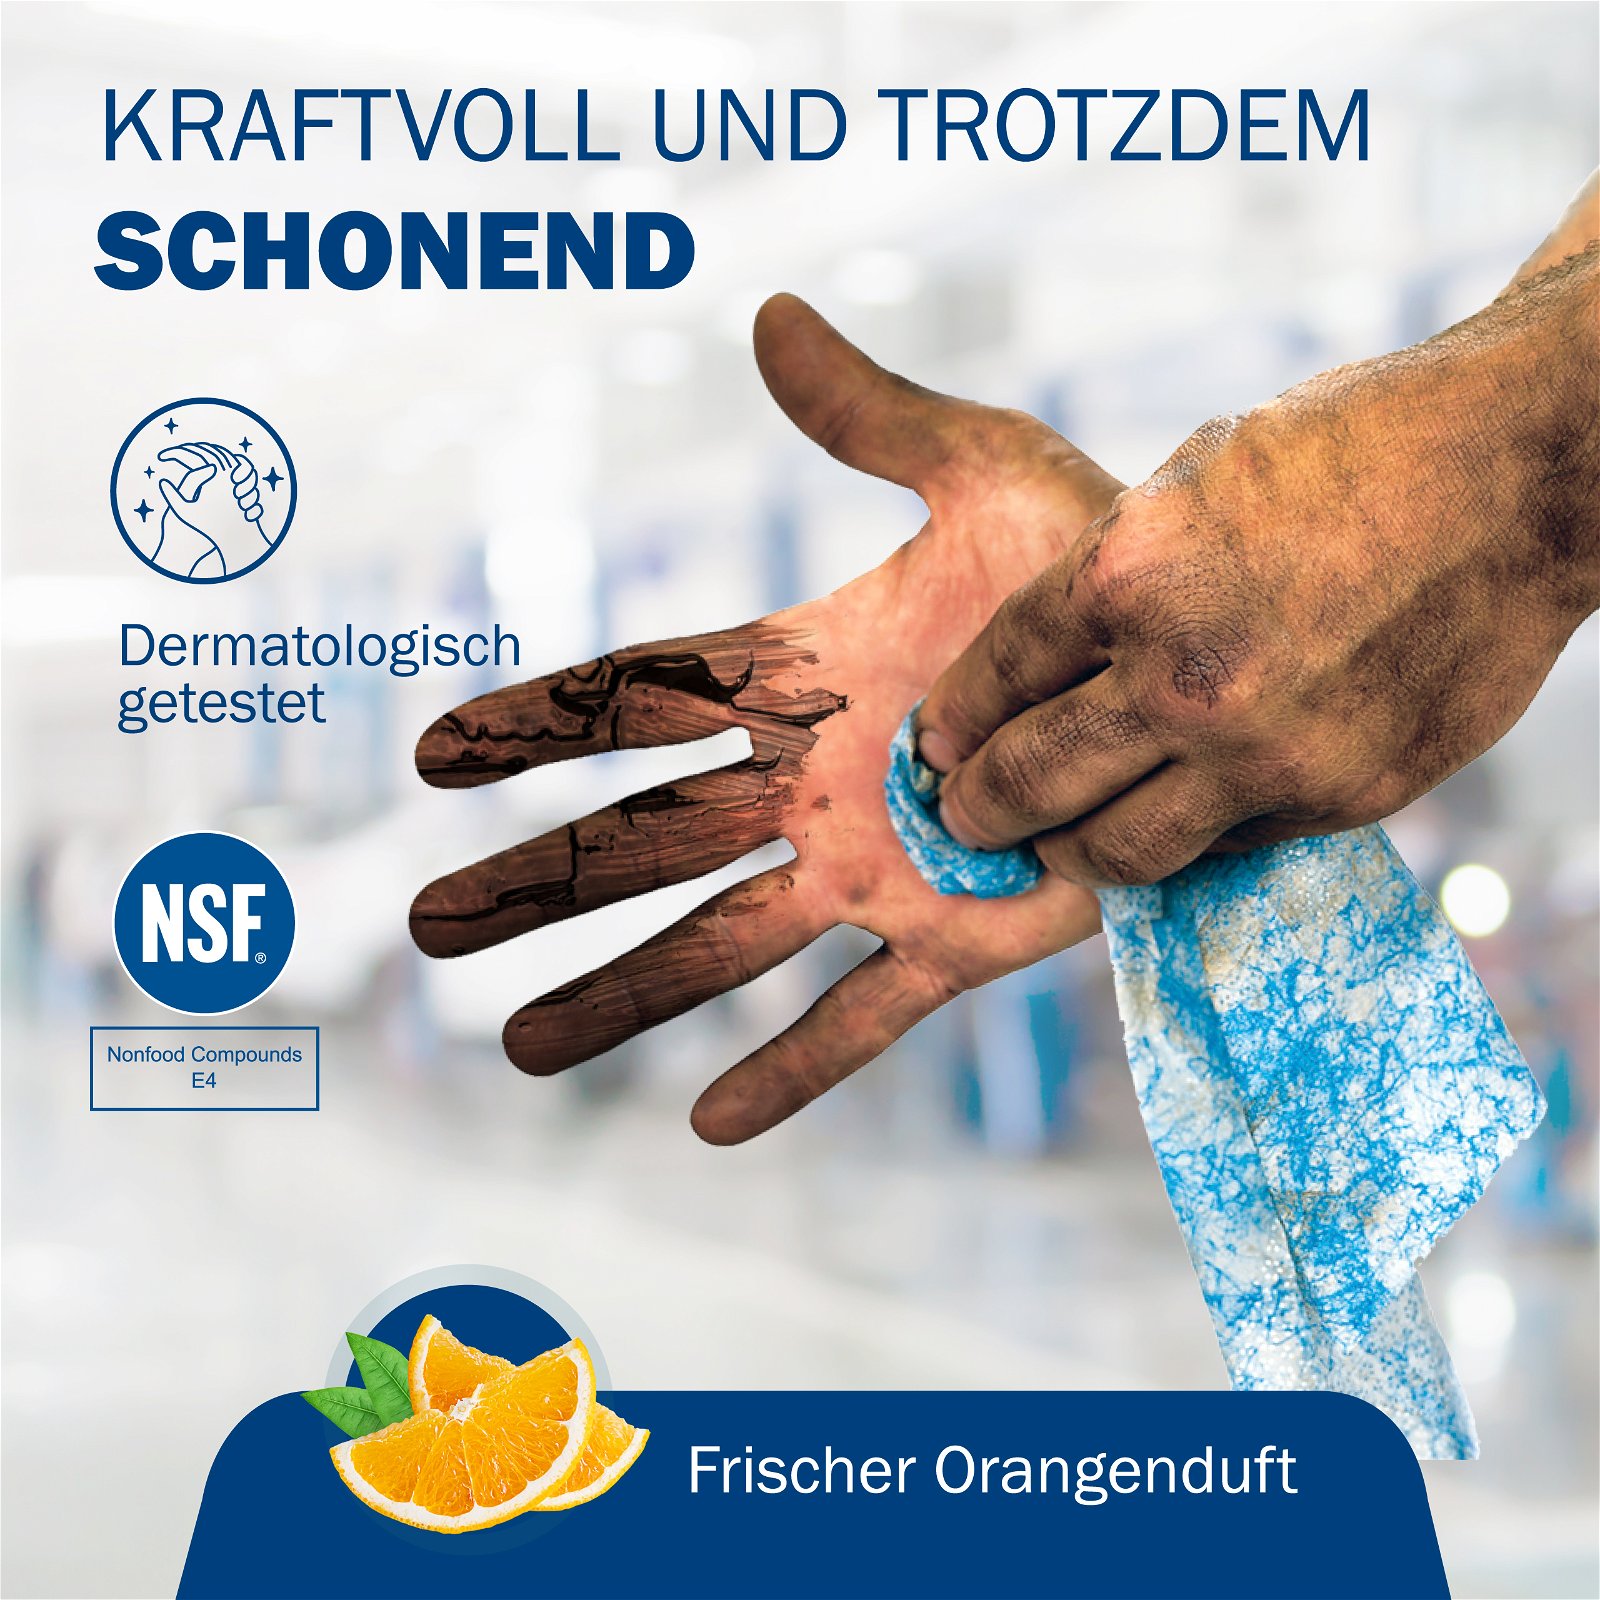 Detailbild: SCRUBS Reinigungstücher zur effektiven Reinigung der Hände